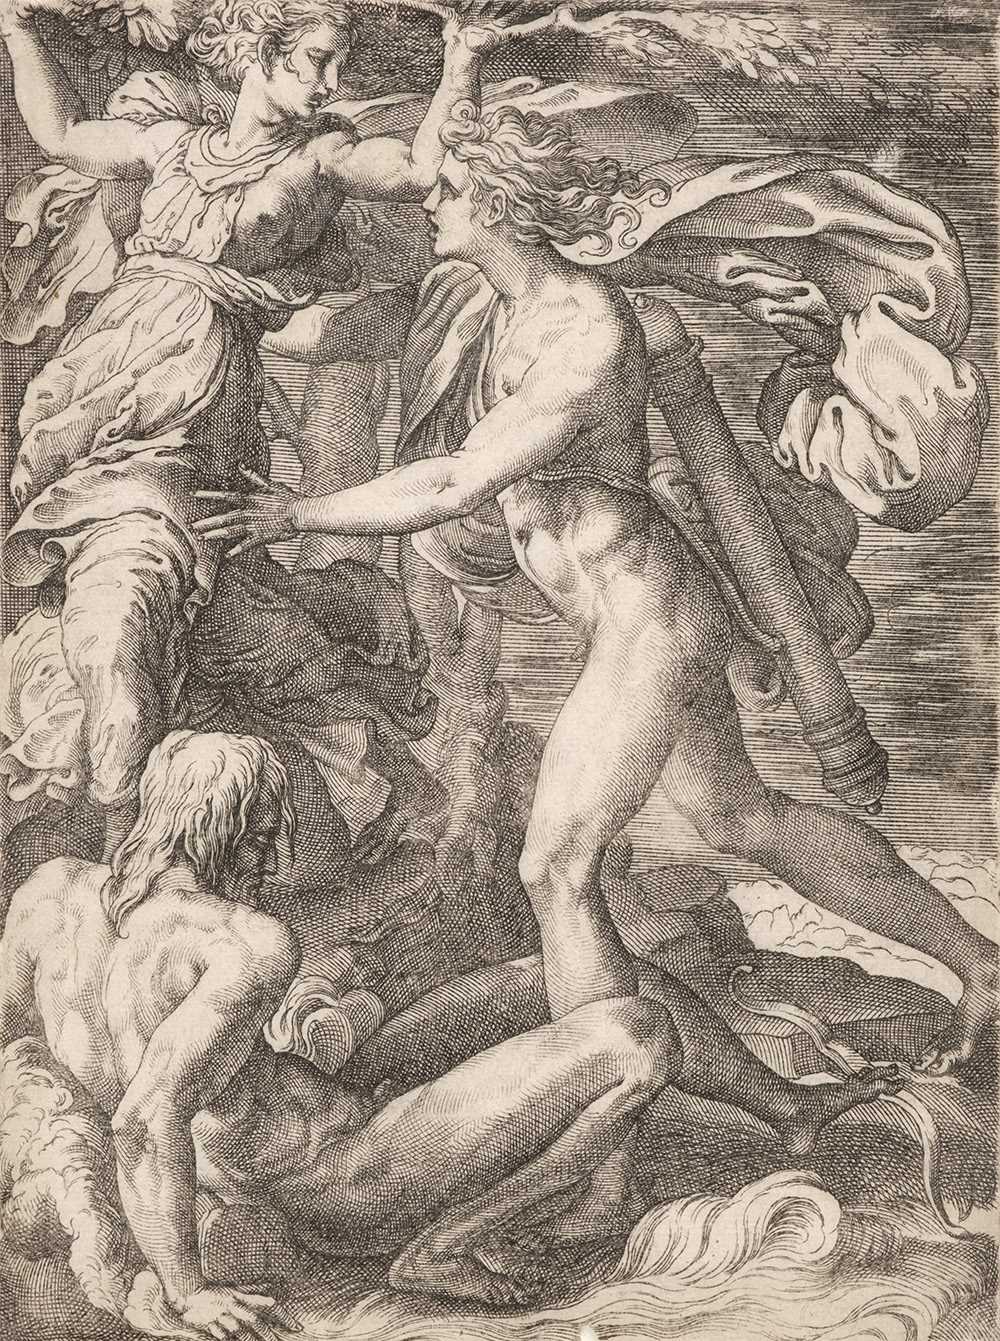 Lot 374 - Caraglio (Gian Giacomo Karalis, circa 1505-1565). Apollo and Daphne